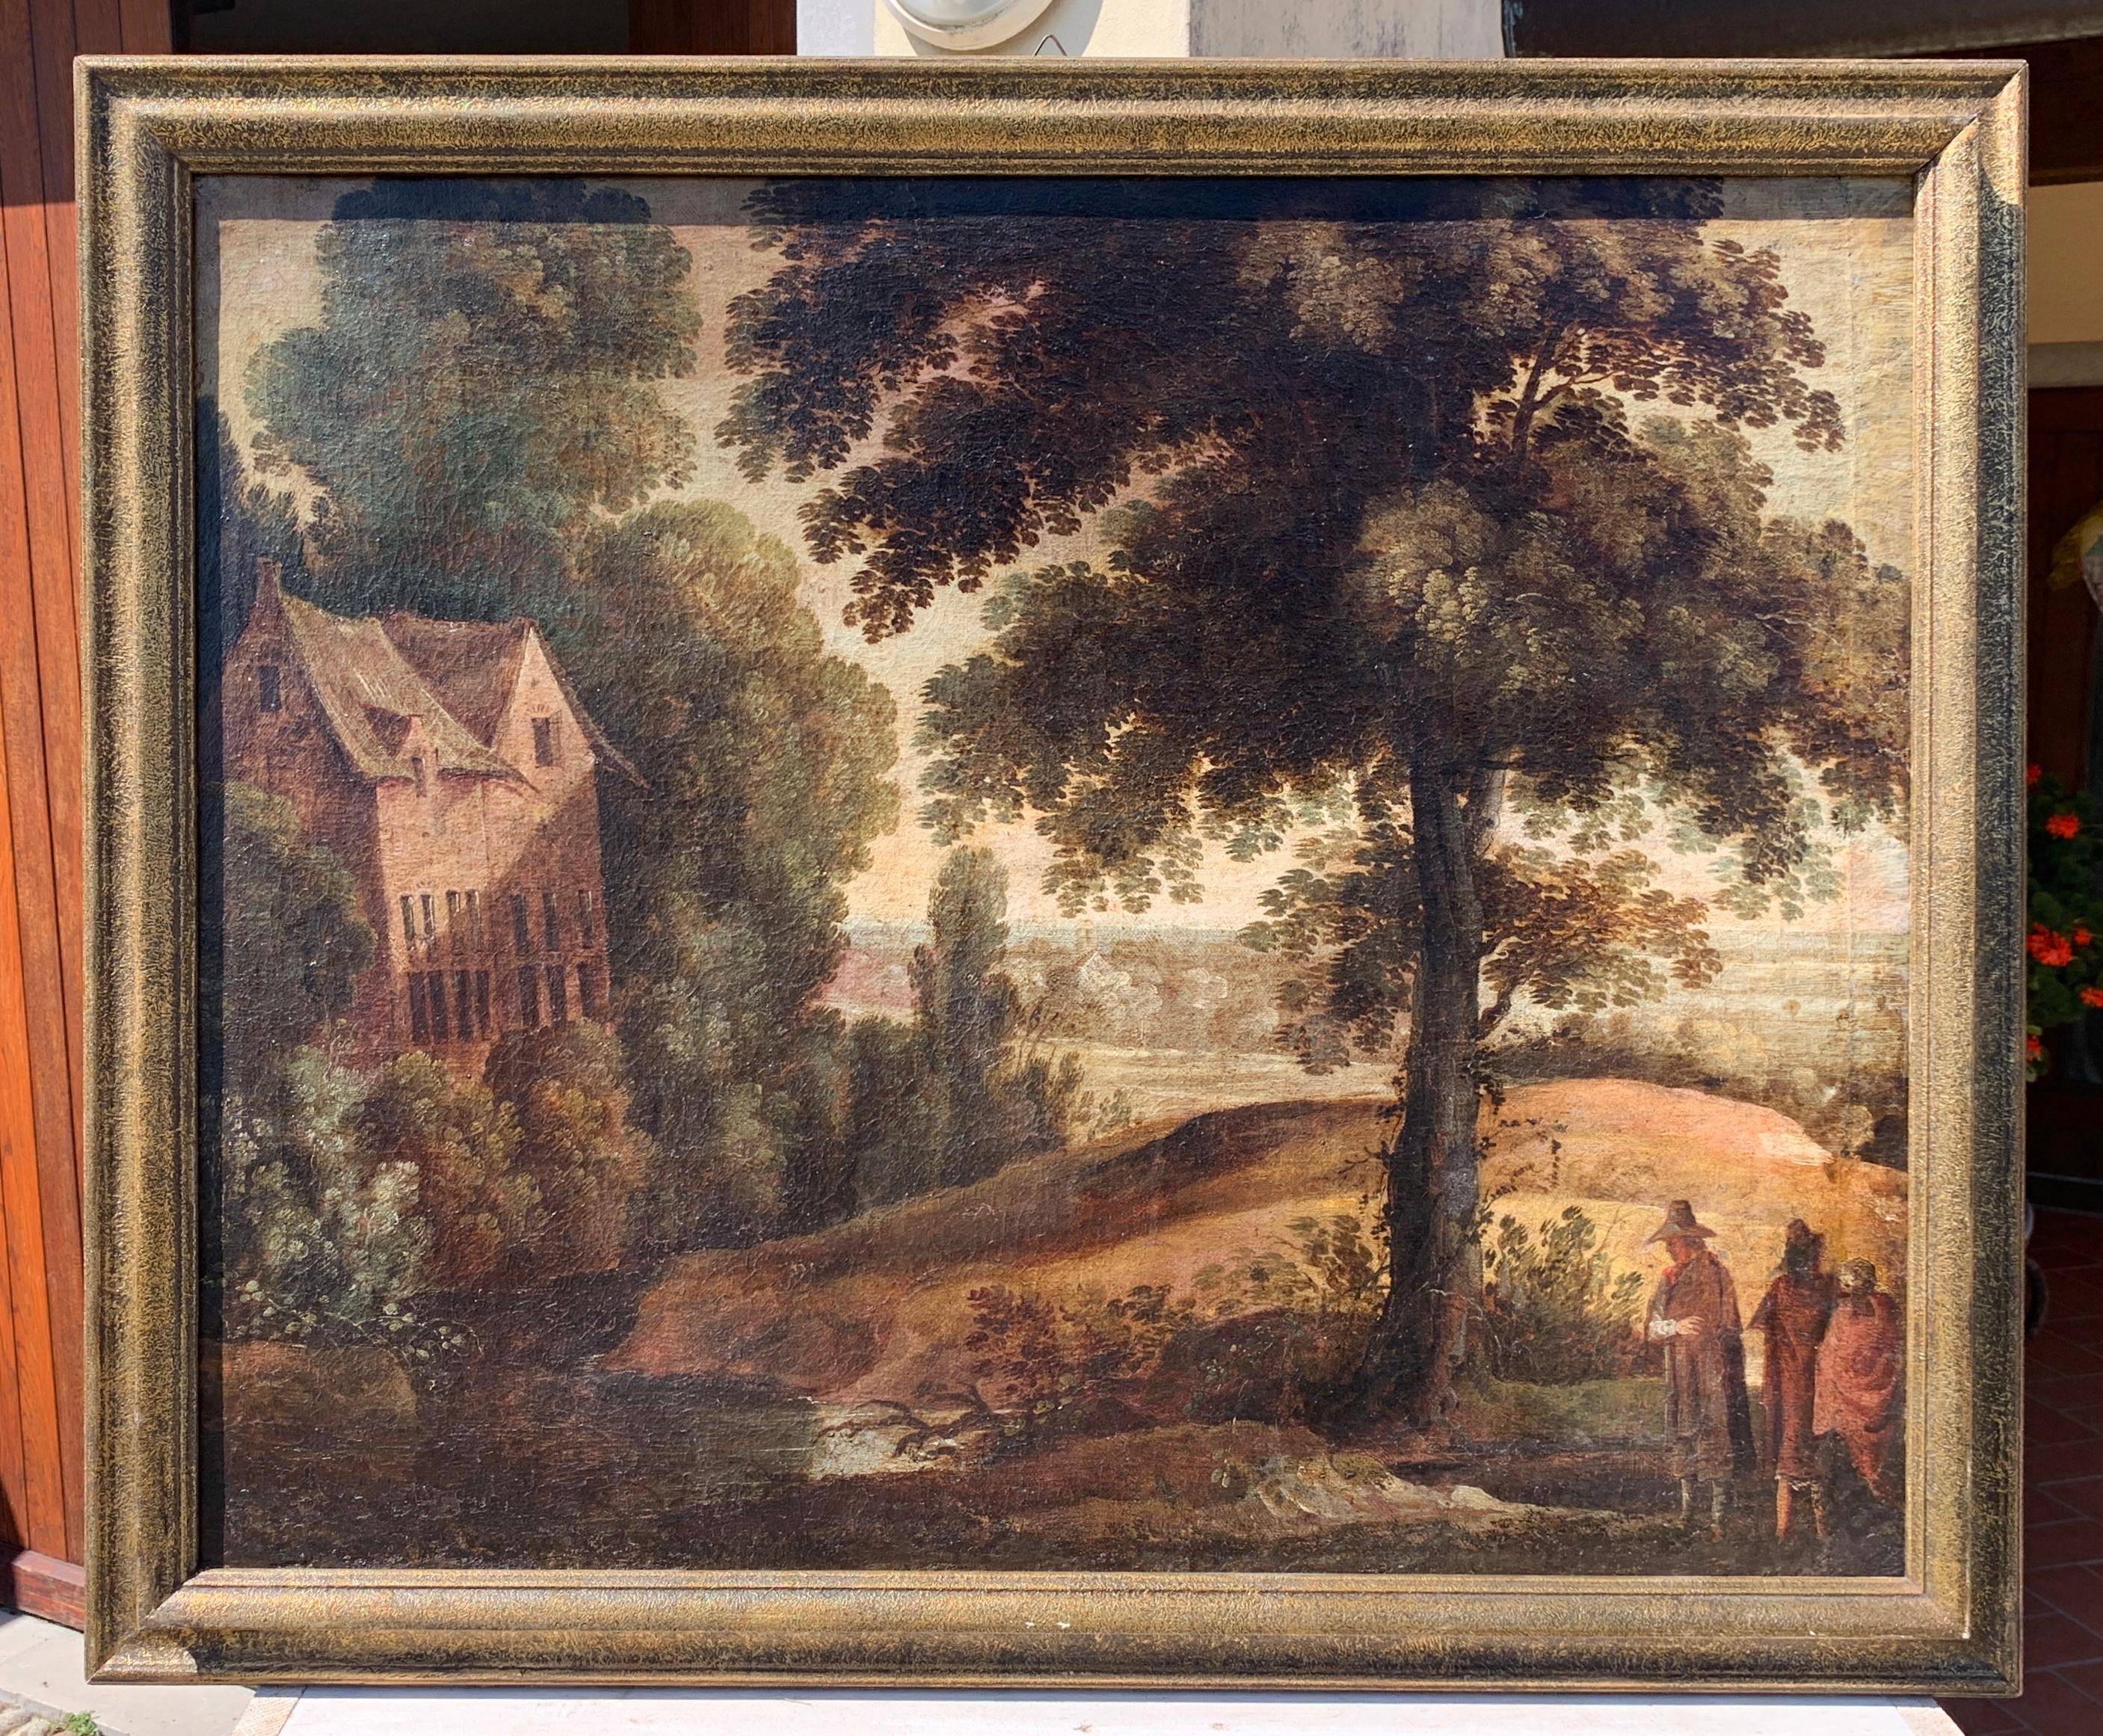 Peintre flamand baroque - peinture de paysage du 17e siècle - Paul Bril - Painting de Unknown